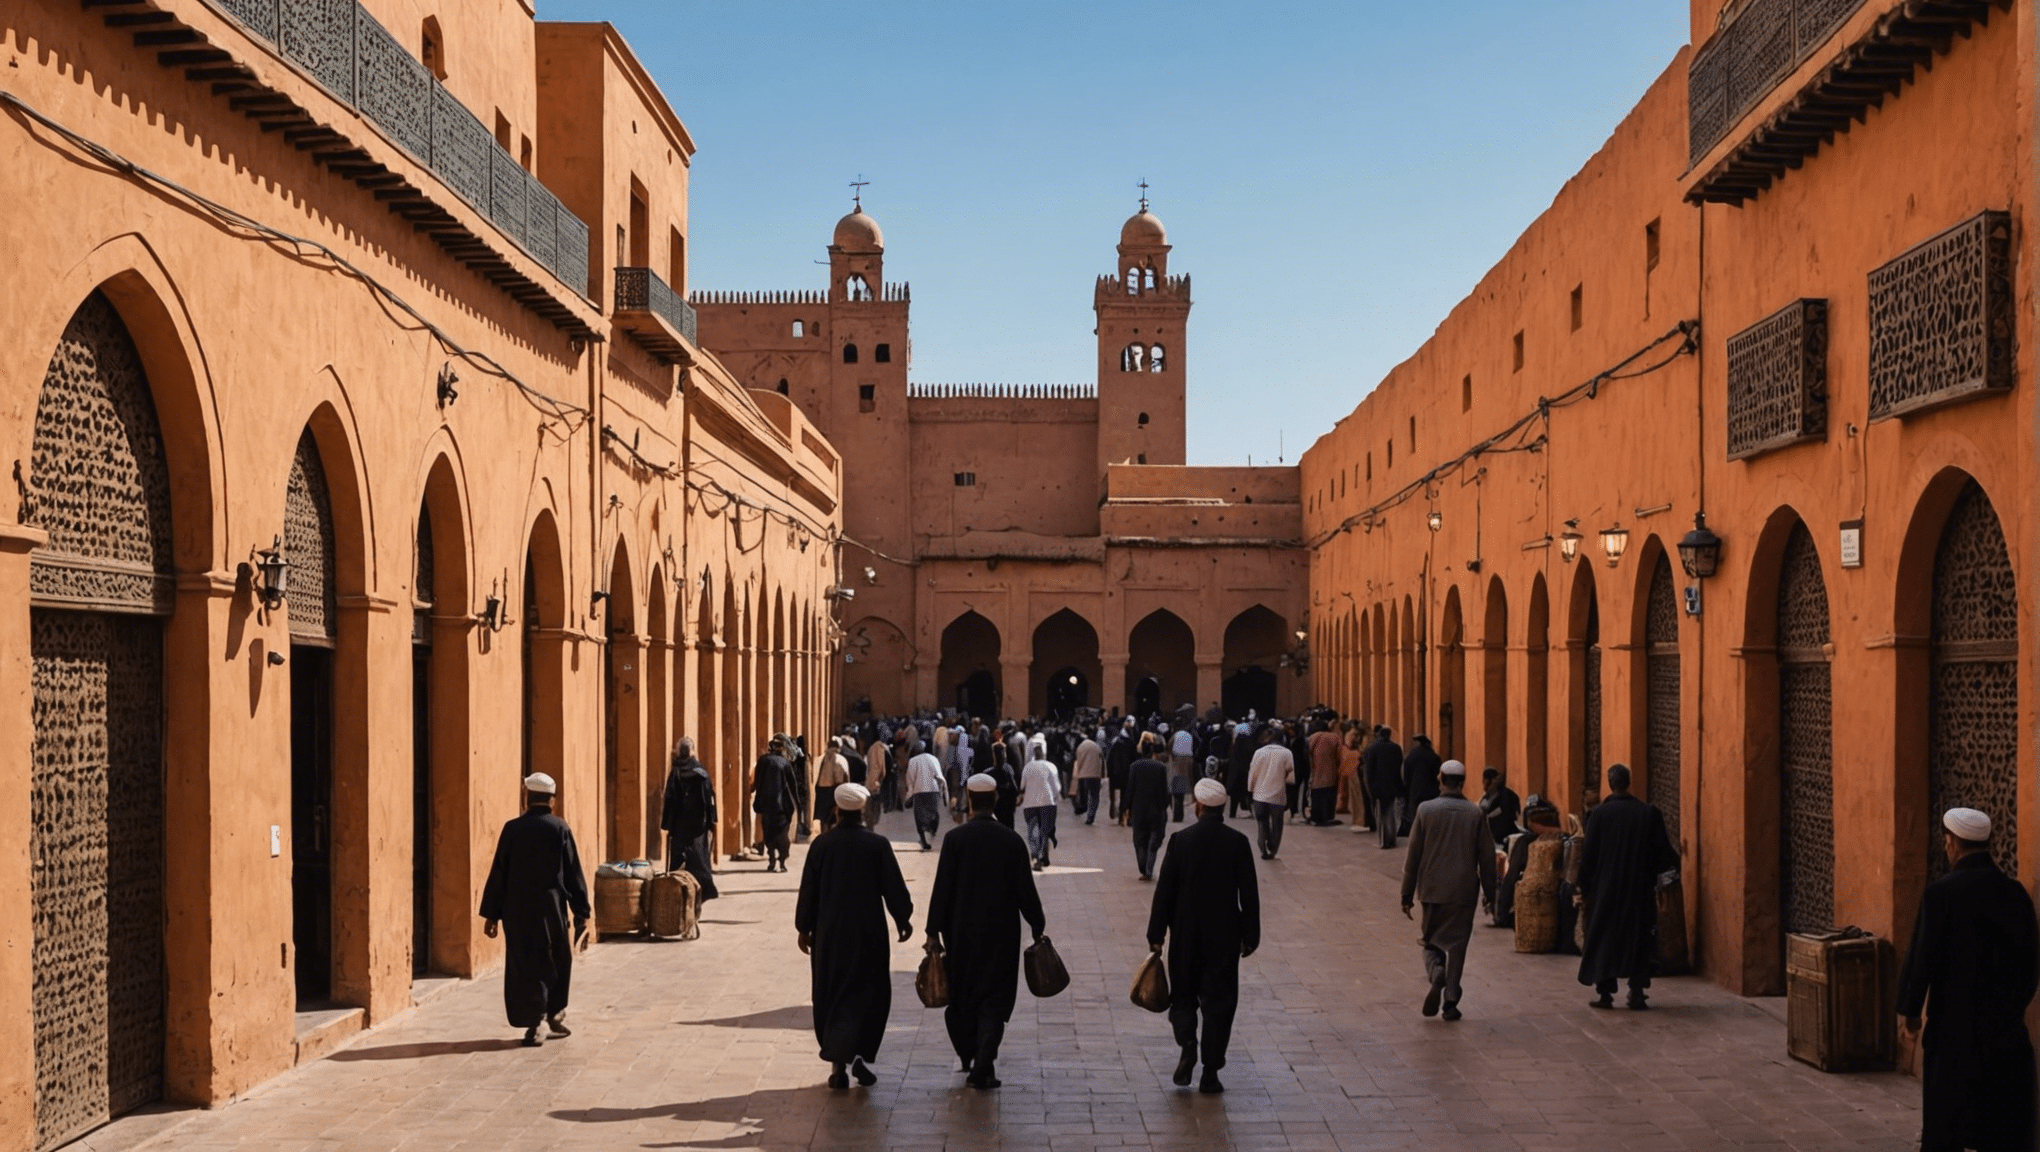 découvrez le meilleur moyen de rejoindre la médina depuis l'aéroport de Marrakech et commencez votre aventure au Maroc sans tracas !